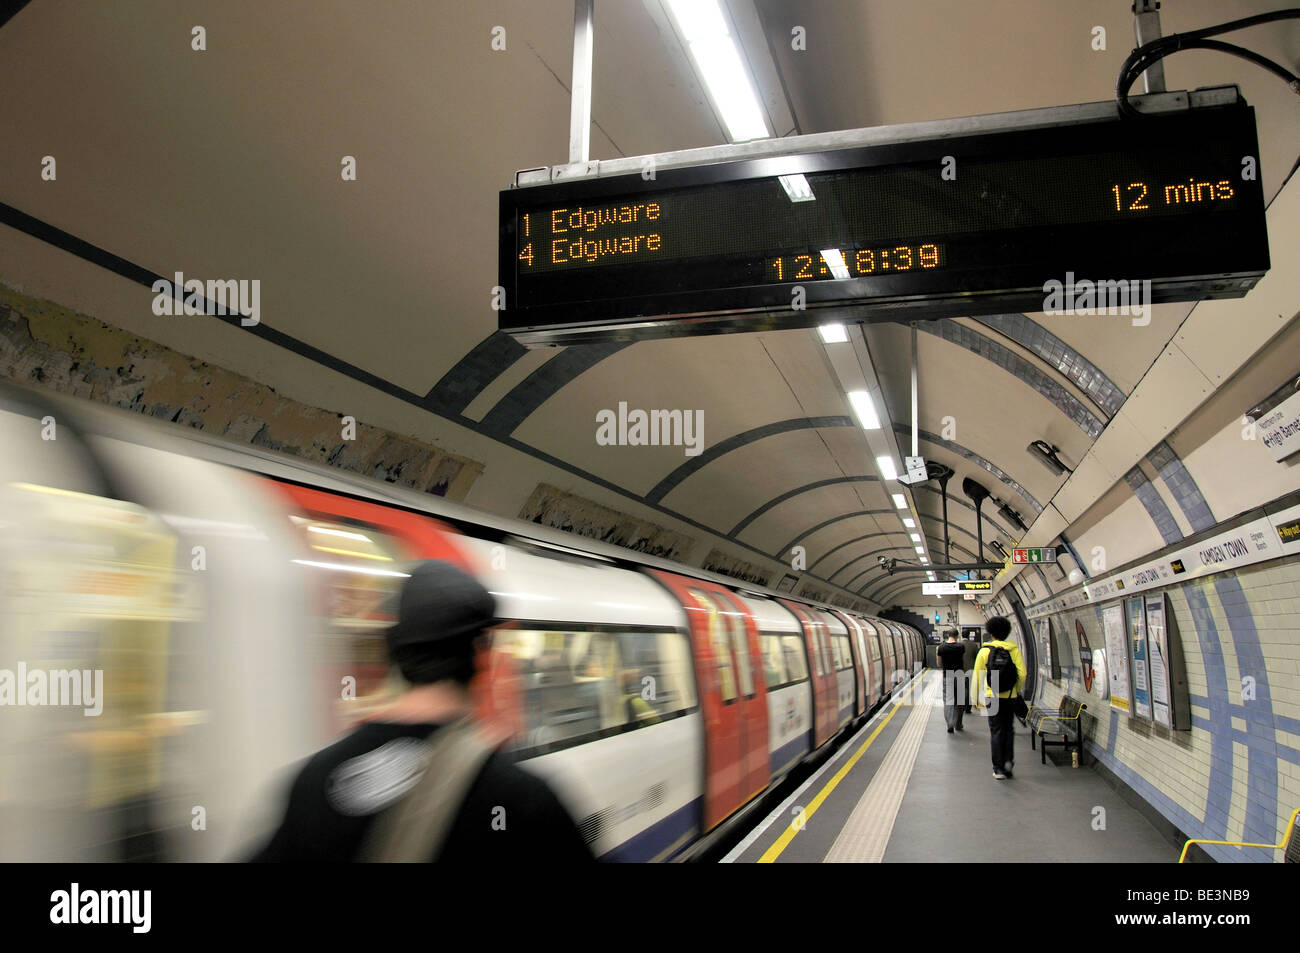 La station de train de quitter la plate-forme à la station de métro Camden Town, London Borough of Camden, Londres, Angleterre, Royaume-Uni Banque D'Images